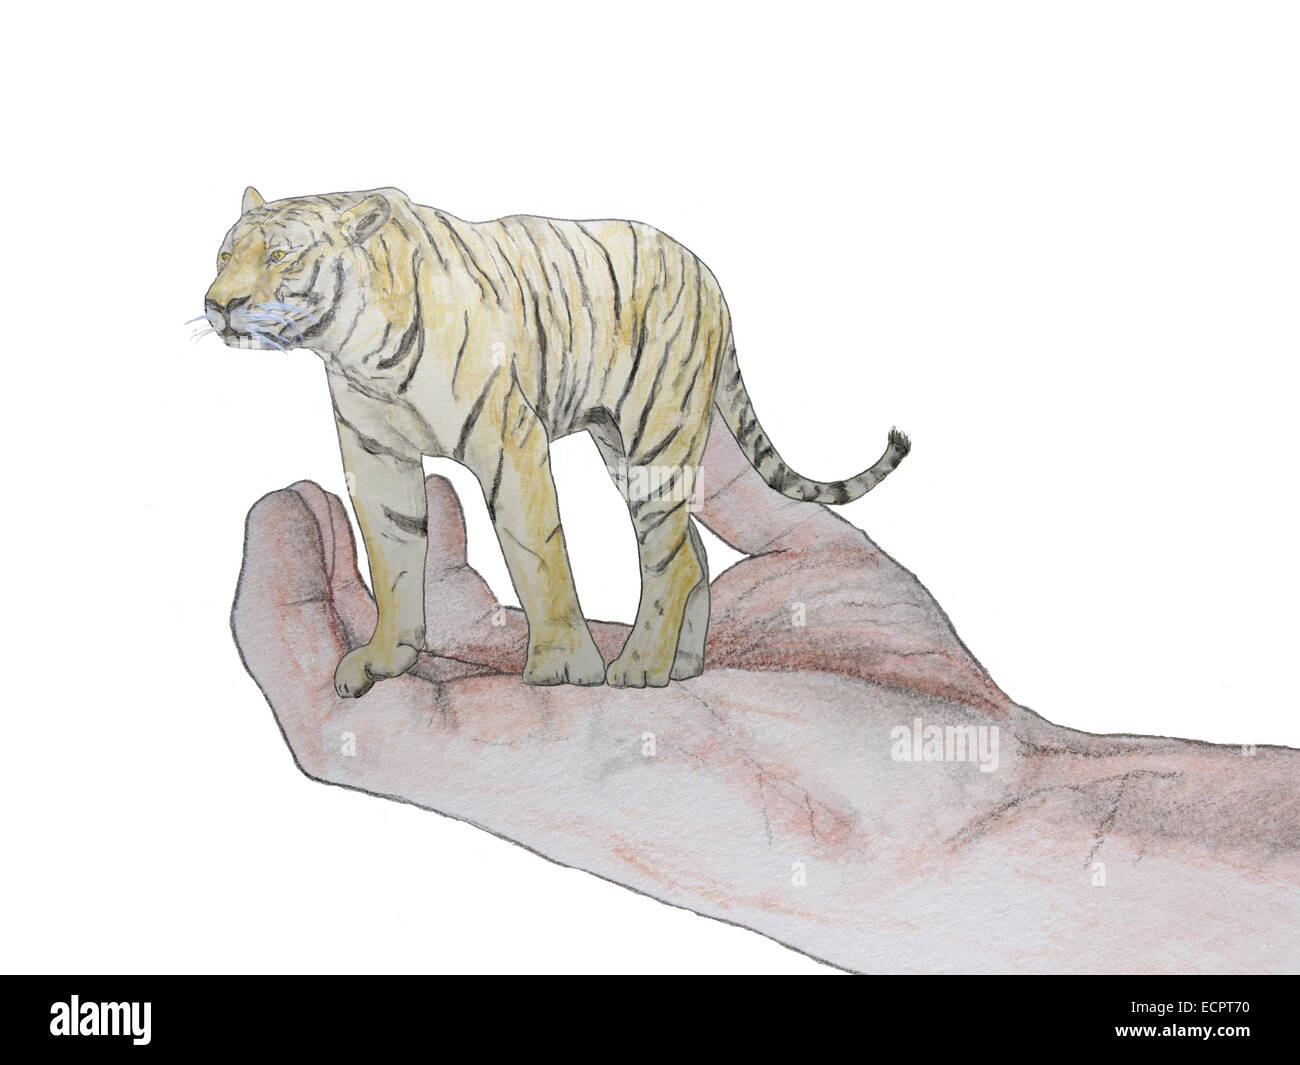 Die Zukunft der Tiger liegt in Menschenhand. Wir können sicher ihn oder Beseitigung dieser Art. In der Tat sollten wir sie schützen. Stockfoto